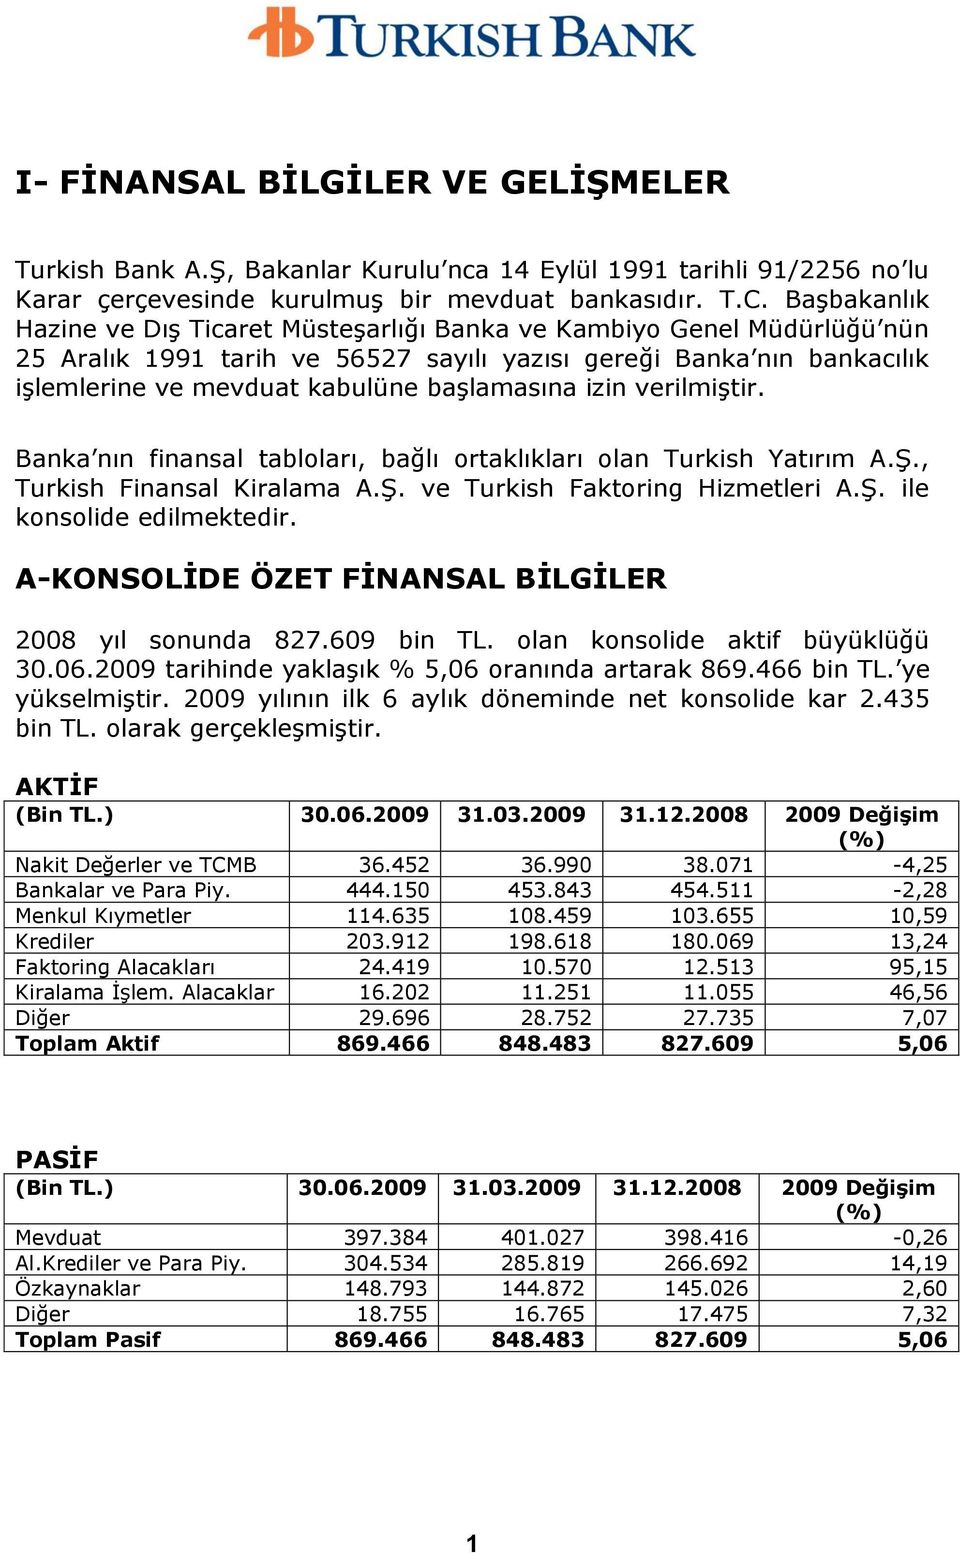 izin verilmiģtir. Banka nın finansal tabloları, bağlı ortaklıkları olan Turkish Yatırım A.ġ., Turkish Finansal Kiralama A.ġ. ve Turkish Faktoring Hizmetleri A.ġ. ile konsolide edilmektedir.